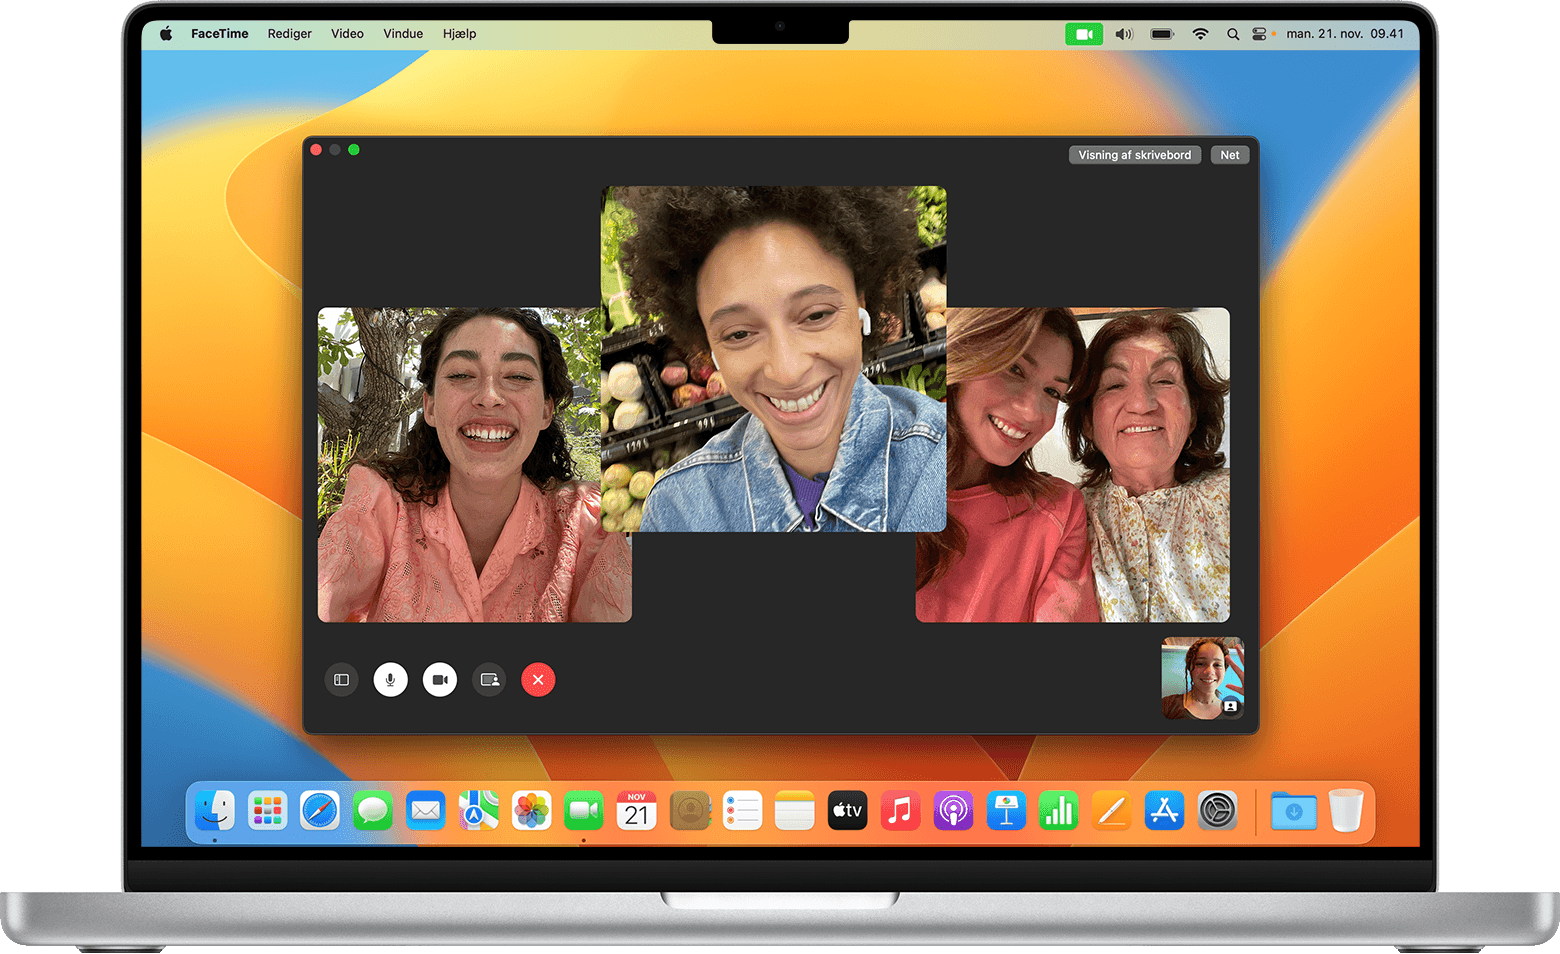 Brug af FaceTime på din Mac - Apple-support (DK)